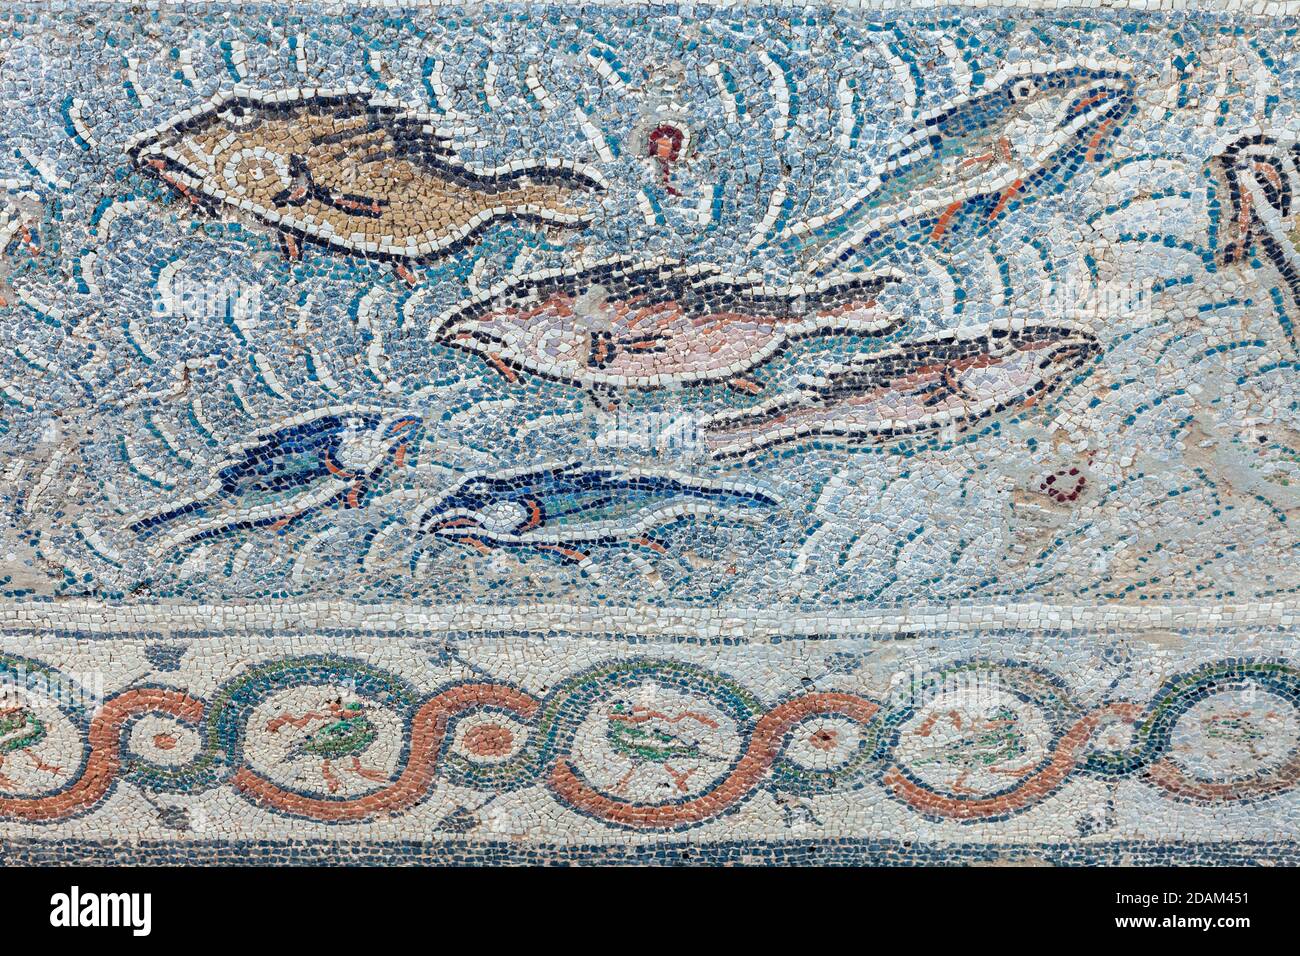 Pavimenti mosaici della Pastoforion Meridionale (pastophoria) nella Basilica di Doumetios nell'antica Nicopoli (Nikopoli), a Preveza, Epiro, Grecia Foto Stock